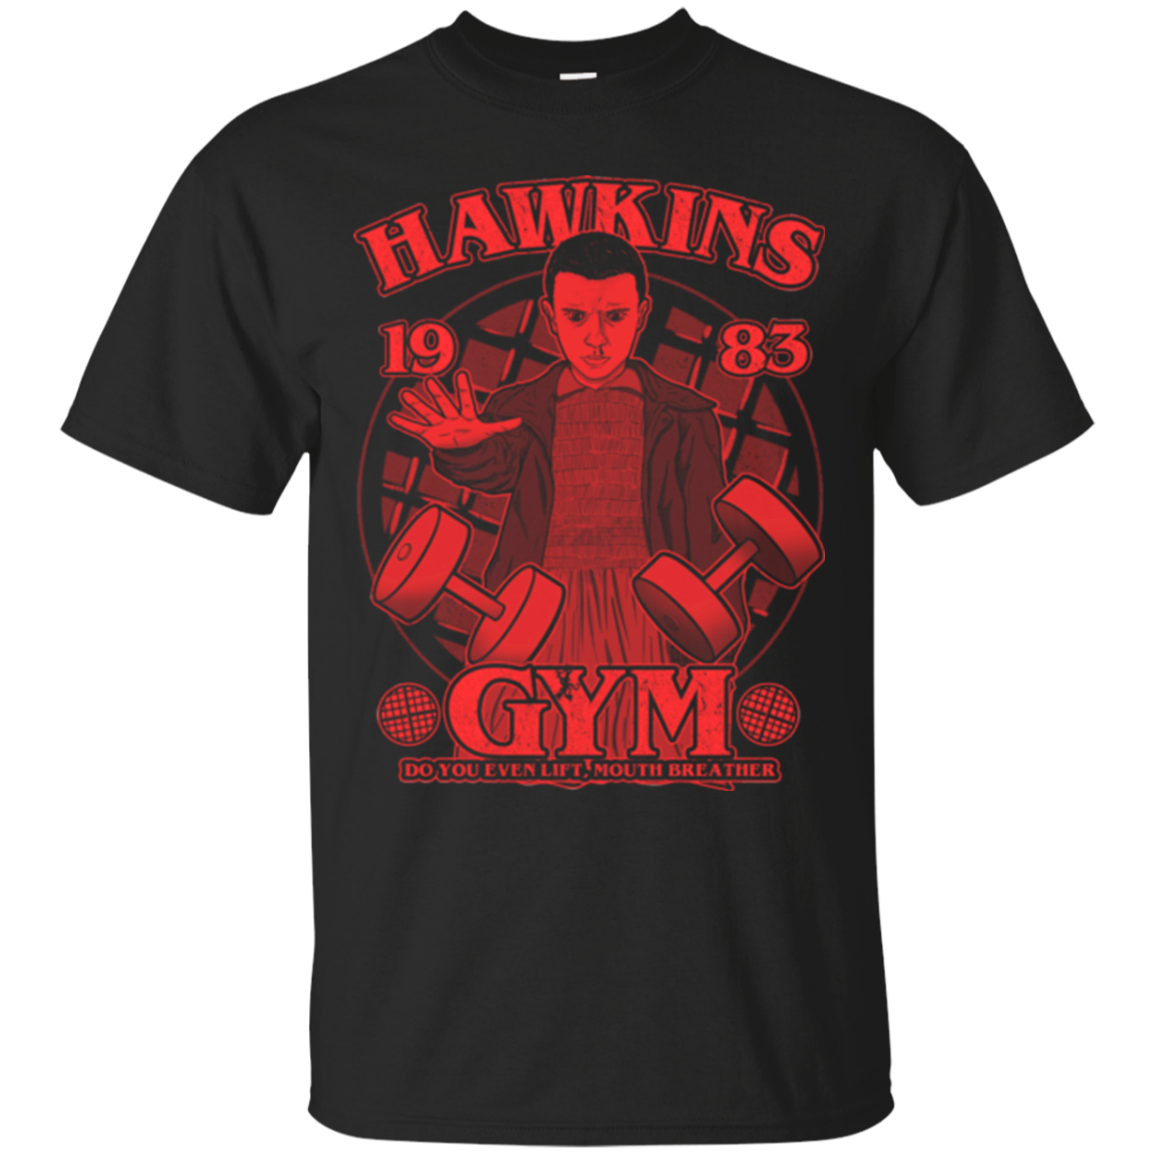 Hawkins Gym T-Shirt